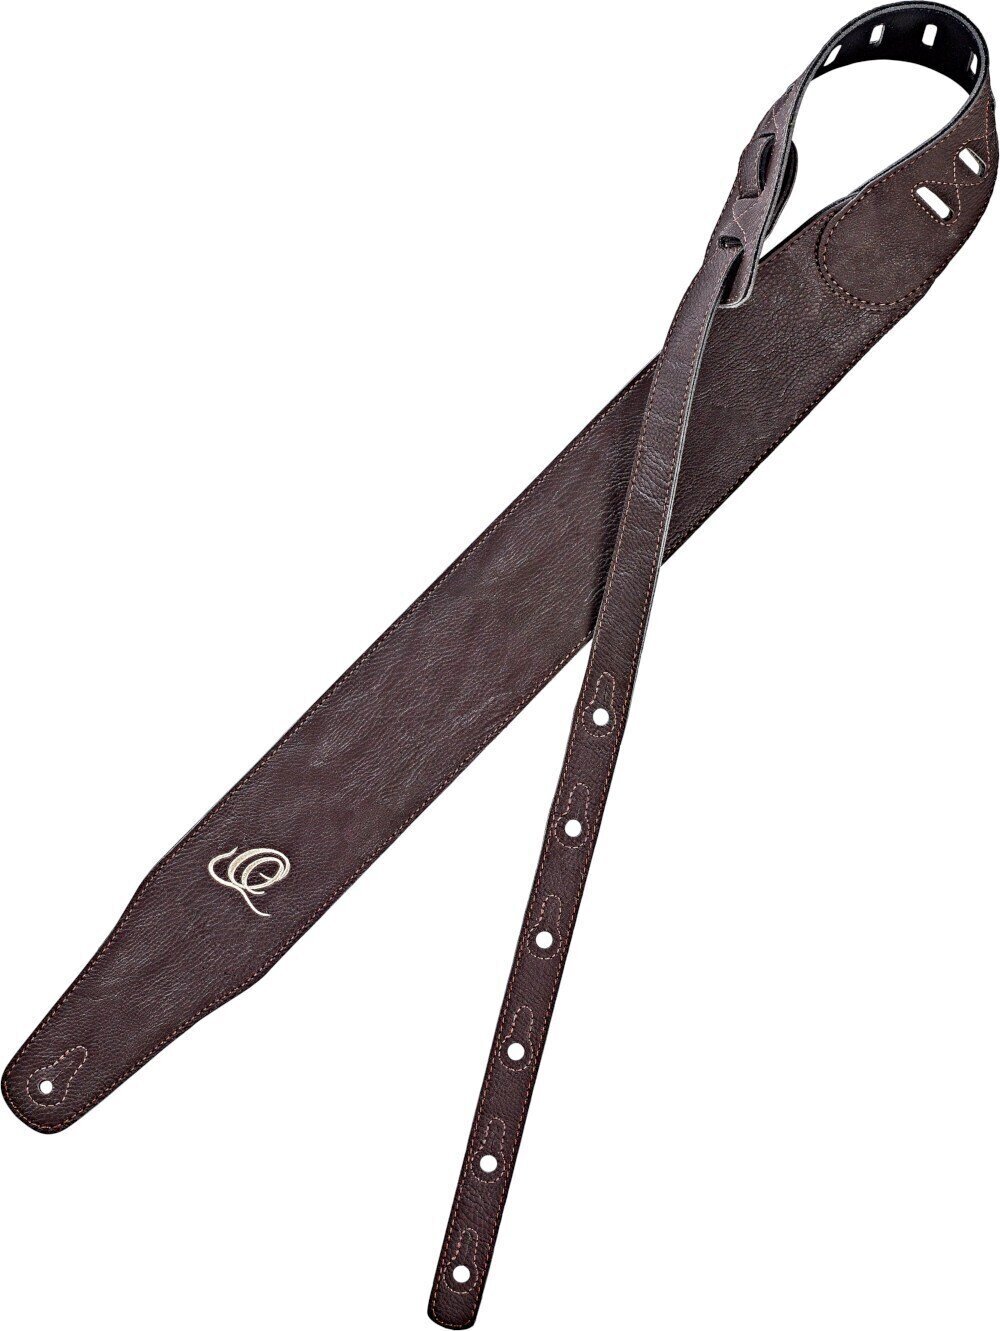 Leather guitar strap Ortega OSVG-75BR Leather guitar strap Brown